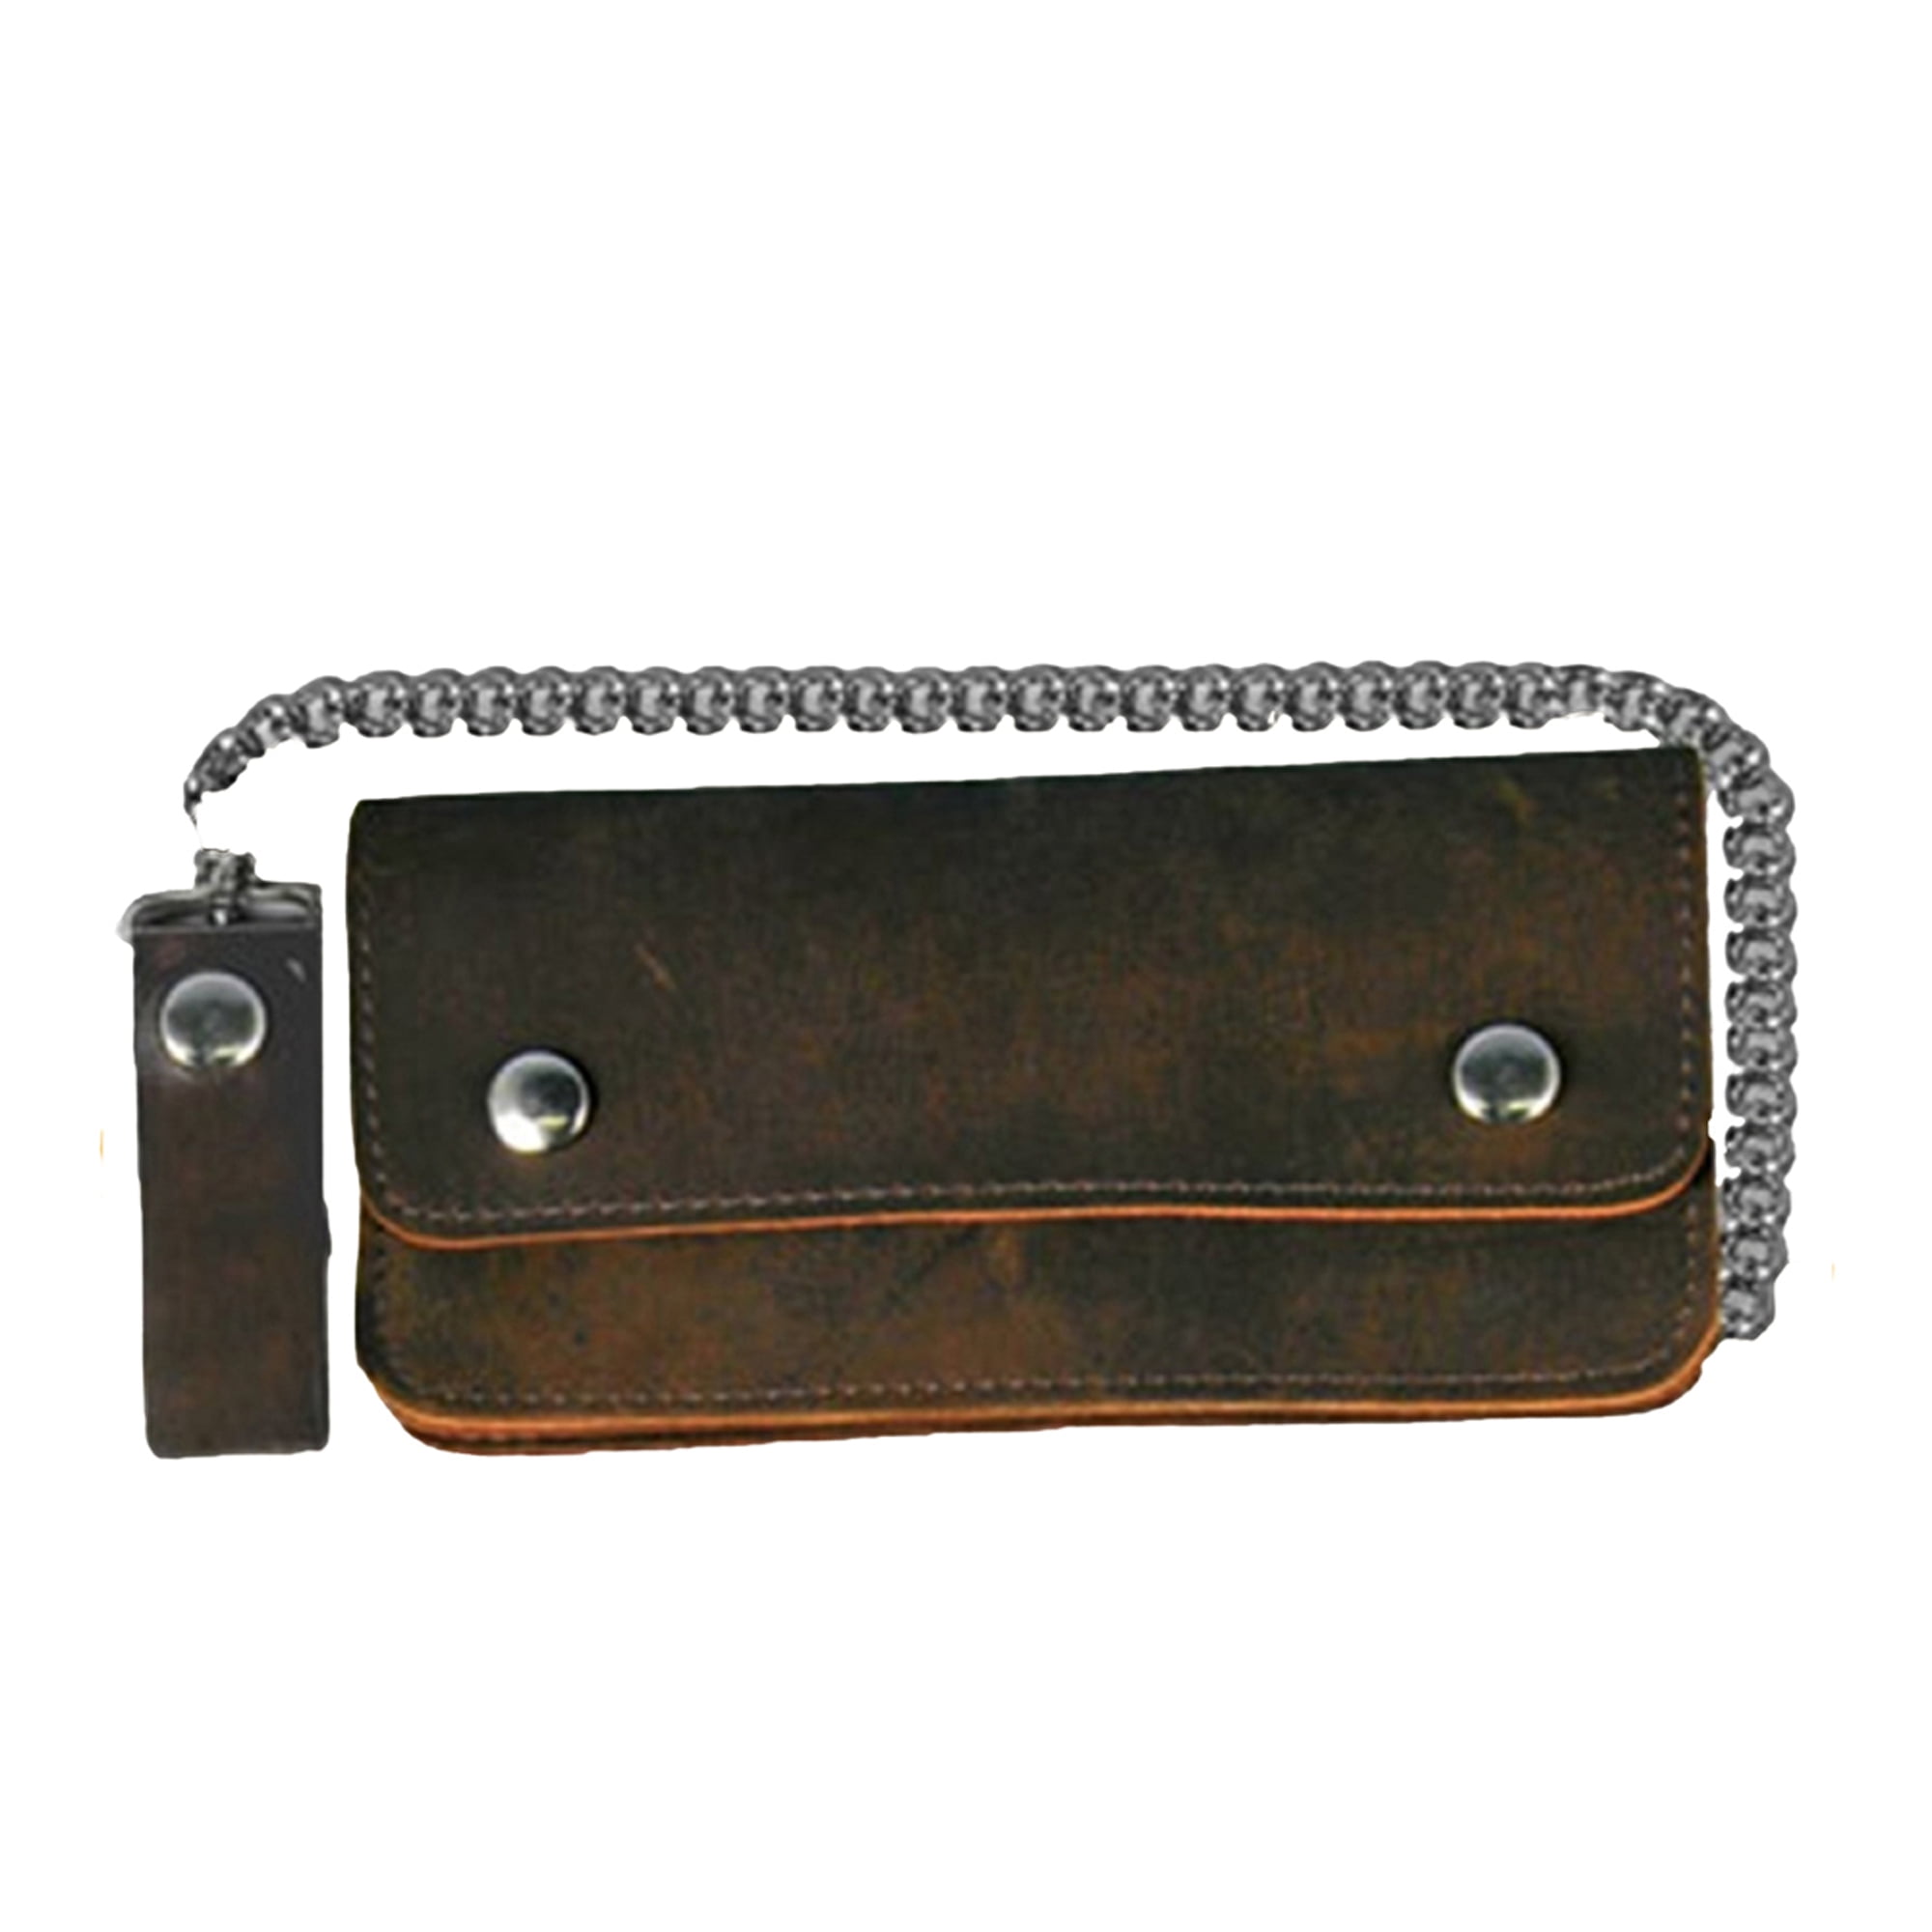 McGuire Nicholas 039S Single Pocket Split Leather Pouch with Belt Clip 